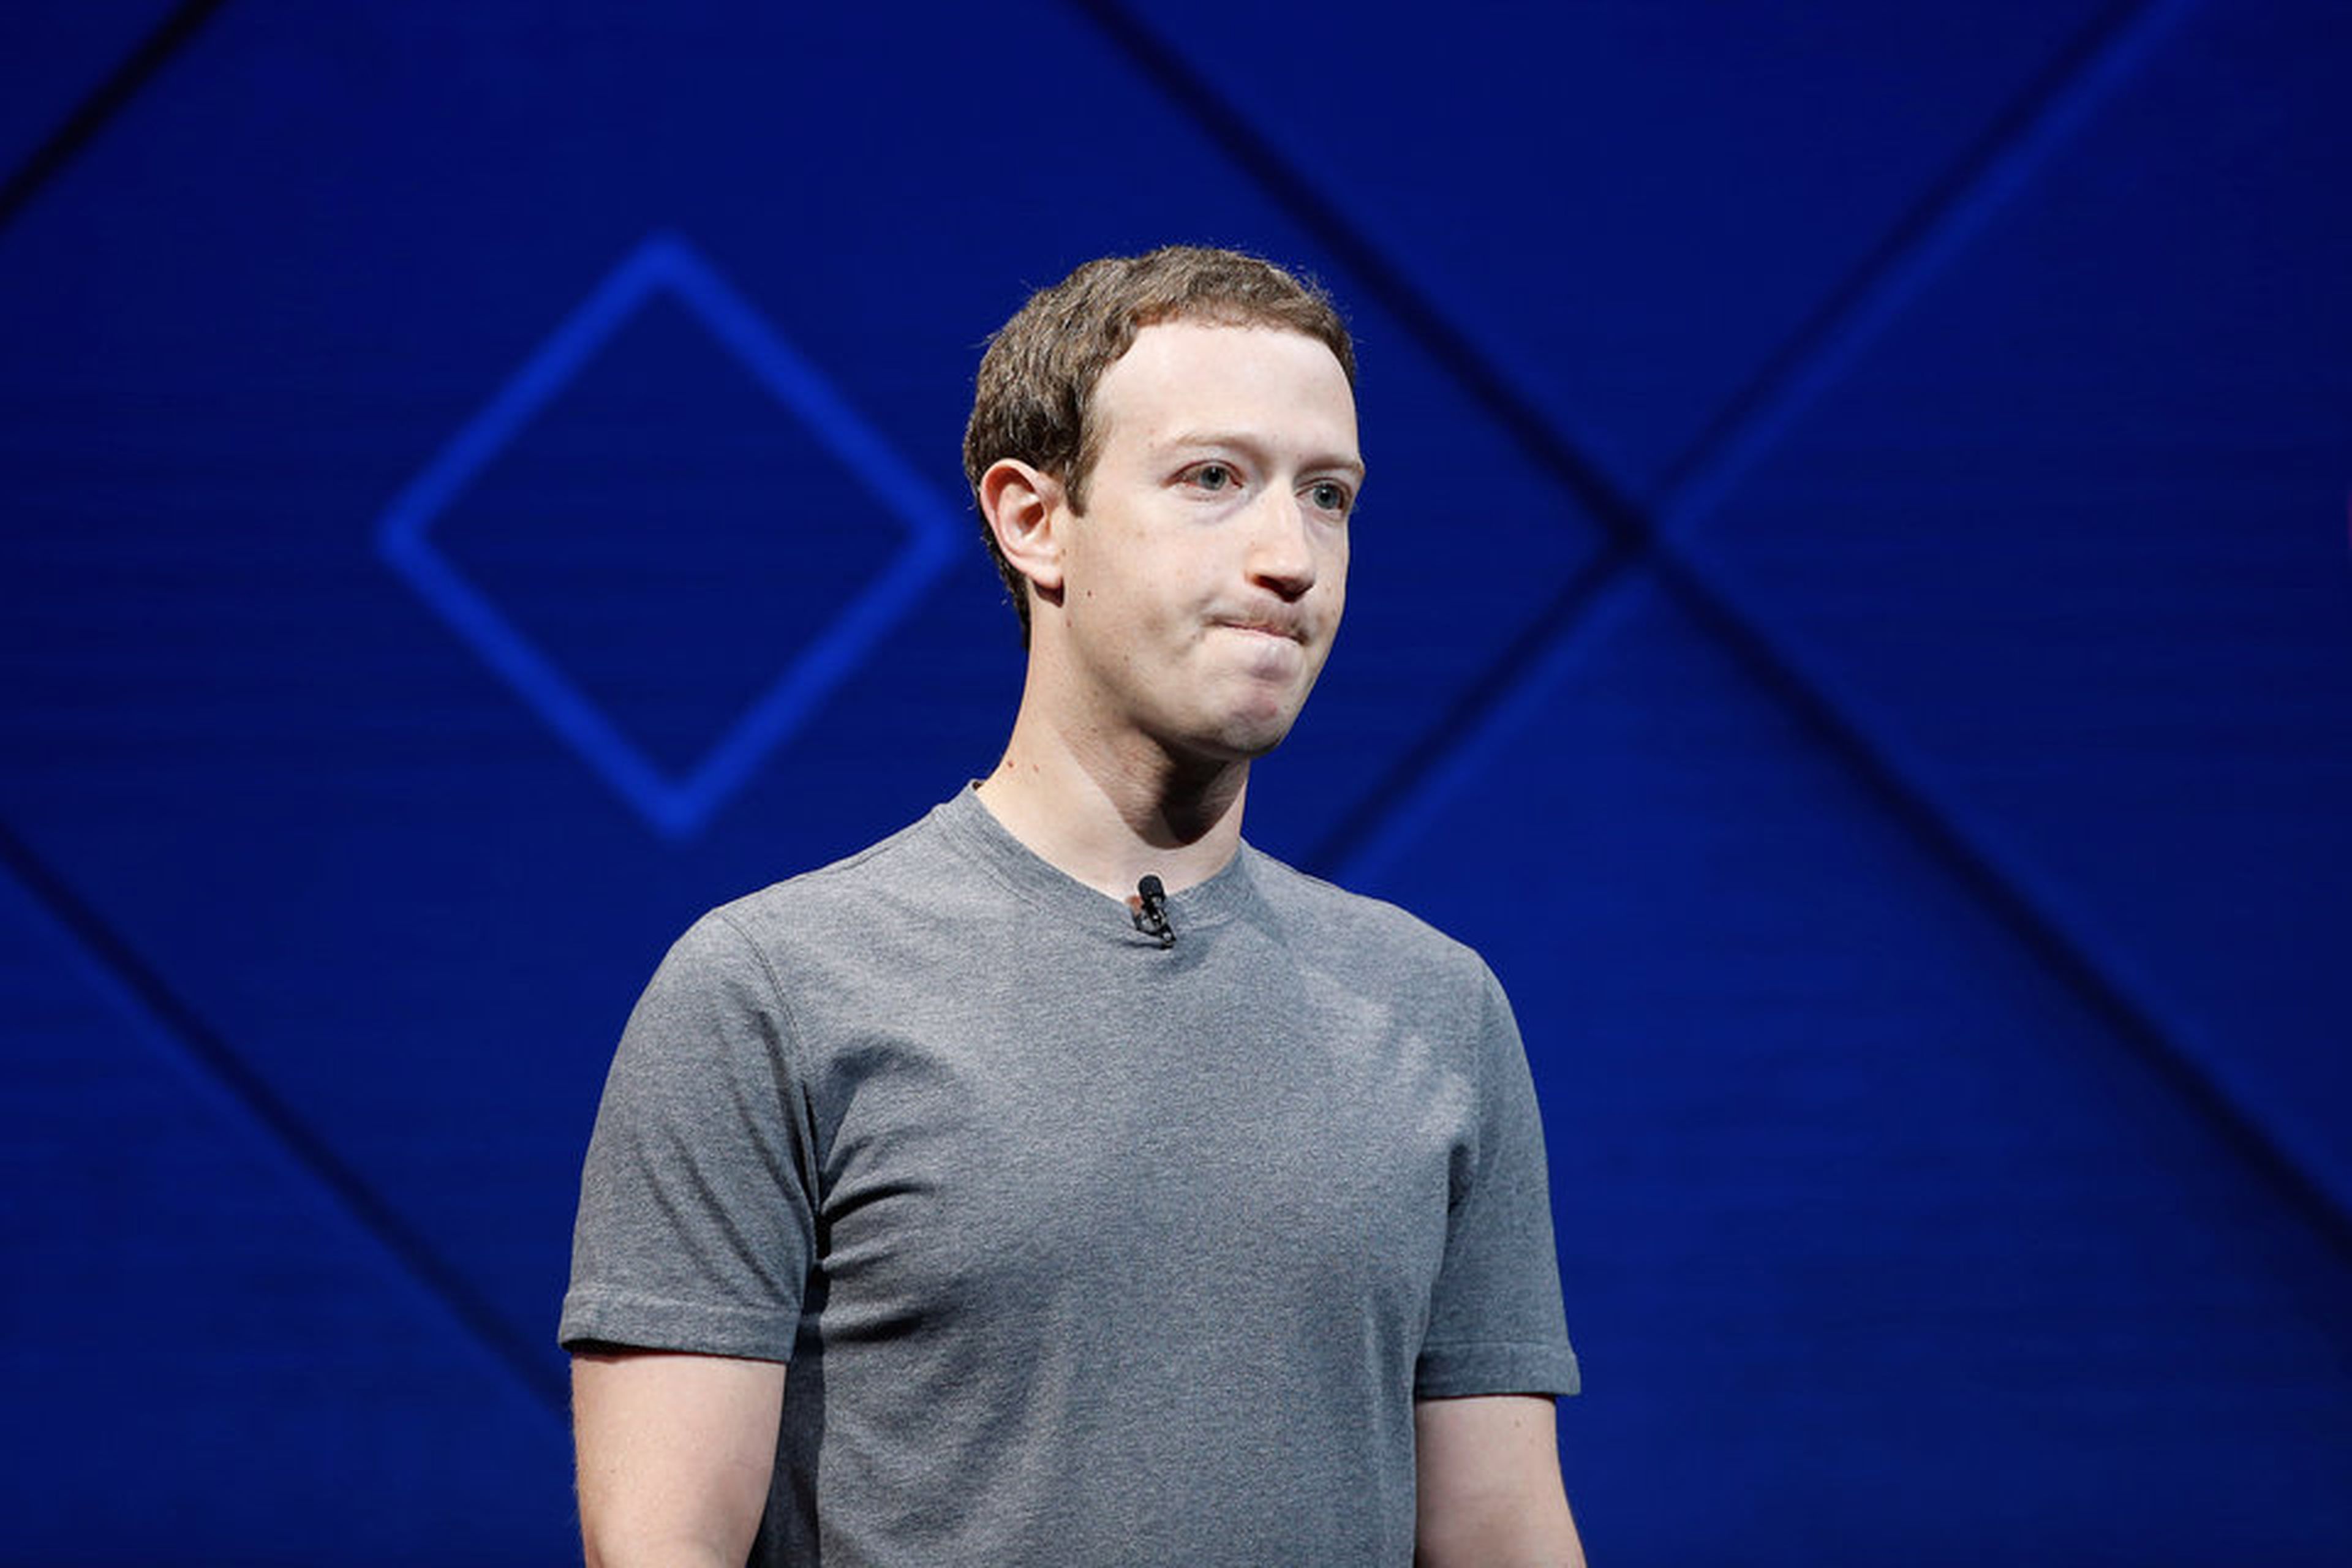 CEO deFacebook, Mark Zuckerberg